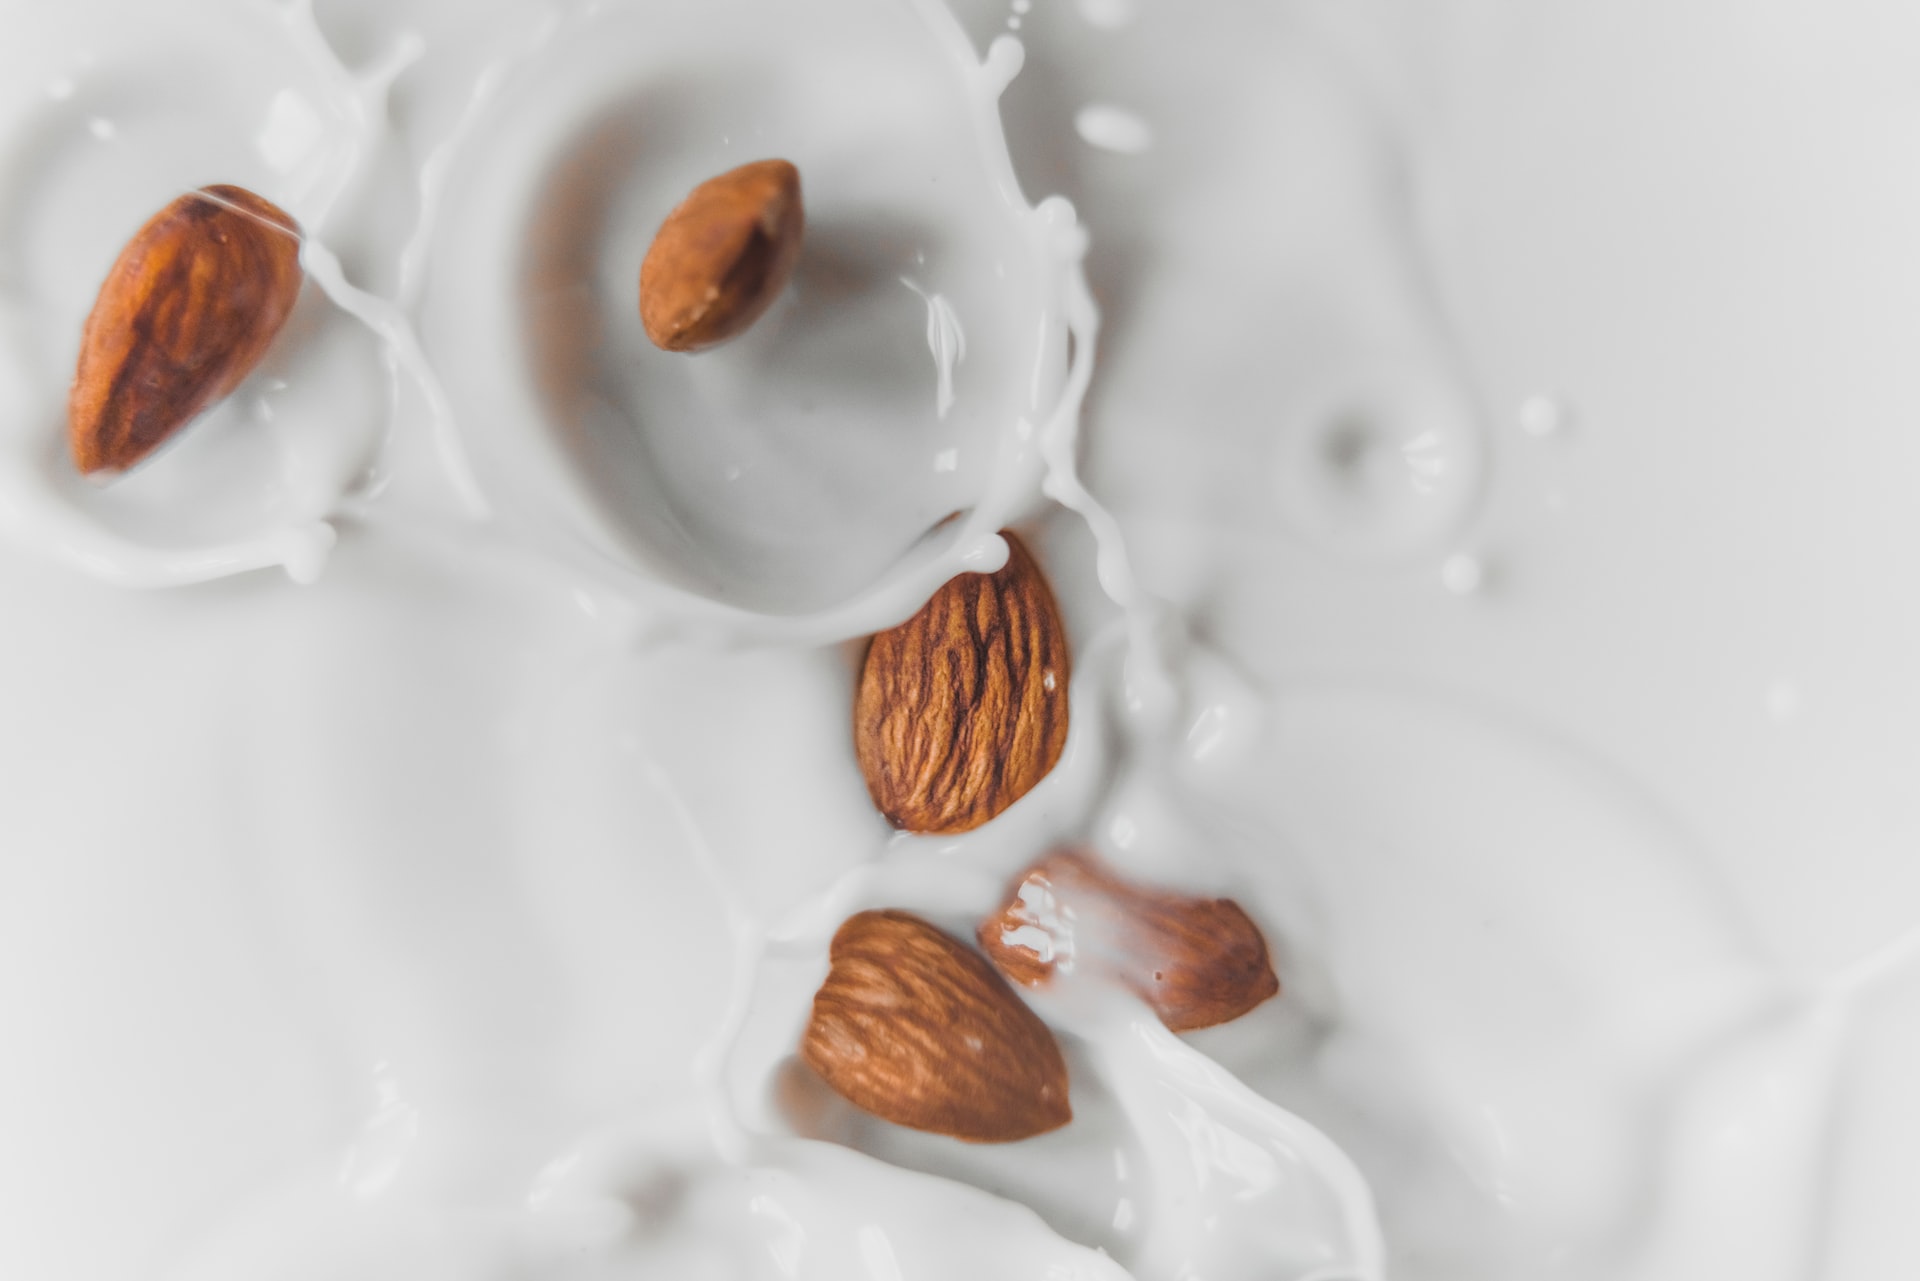 5 τρόποι για να βρεις υγιεινό γάλα φυτικής προέλευσης και πώς να διαλέξεις το καλύτερο  